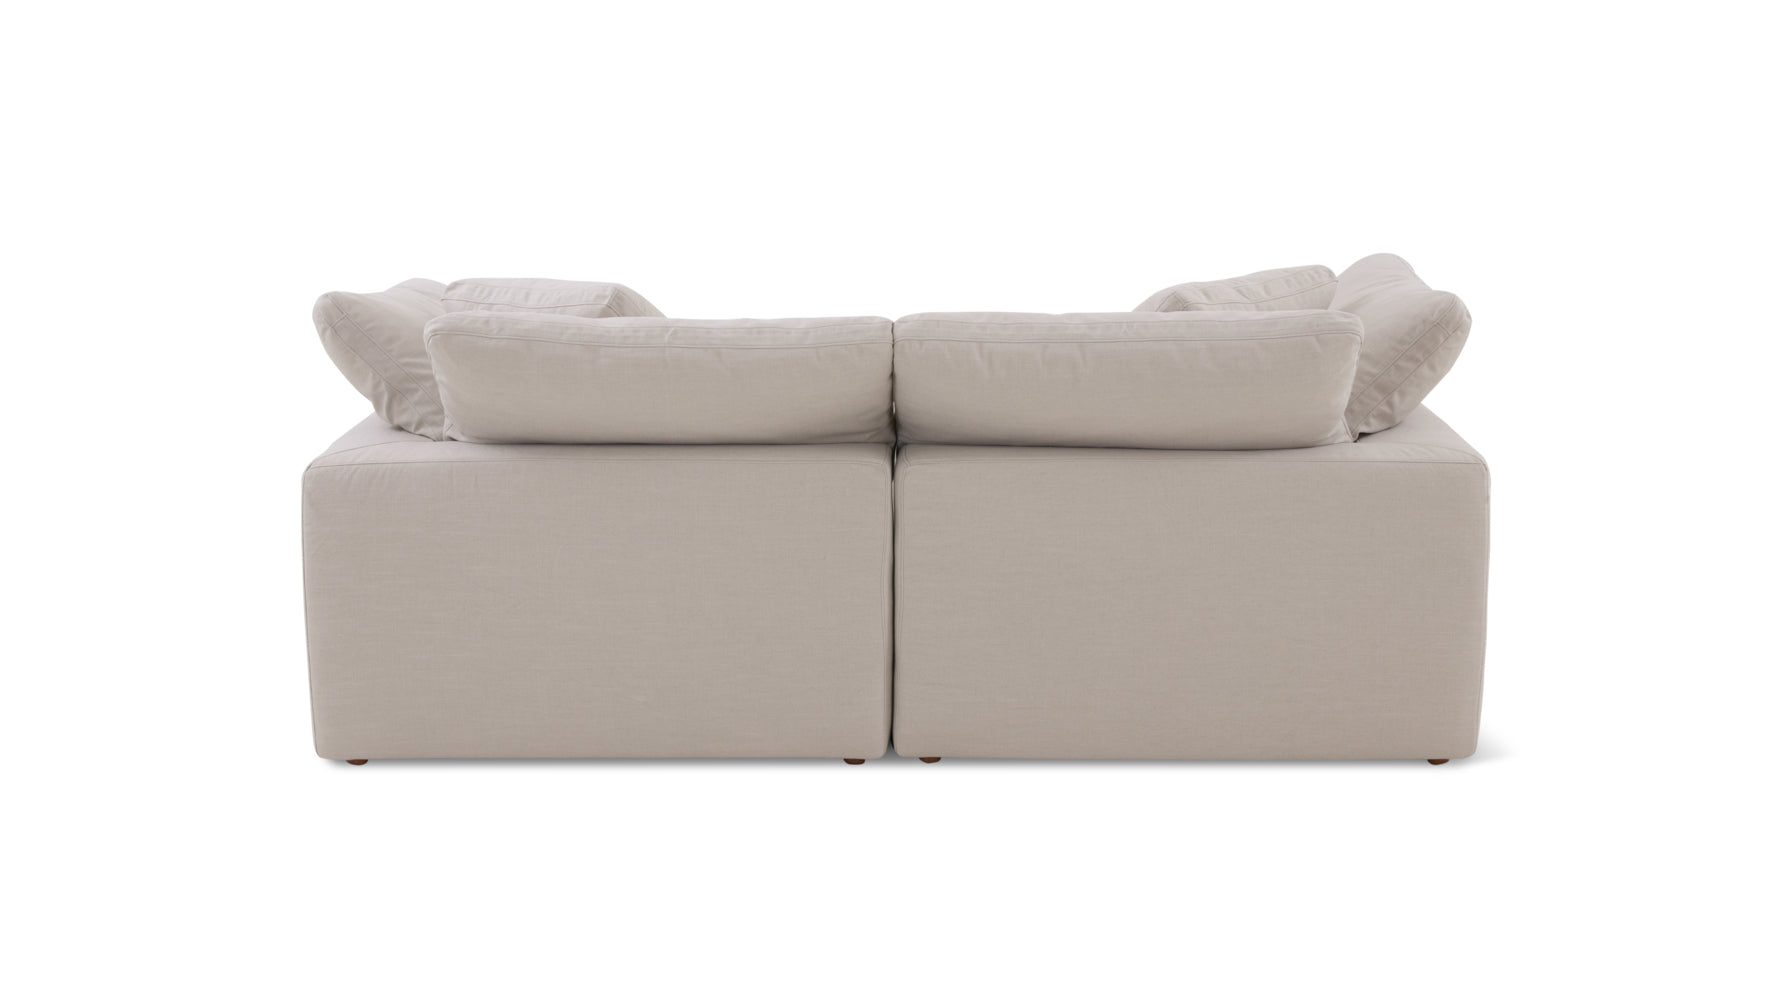 Movie Night™ 2-Piece Modular Sofa, Large, Clay - Image 8